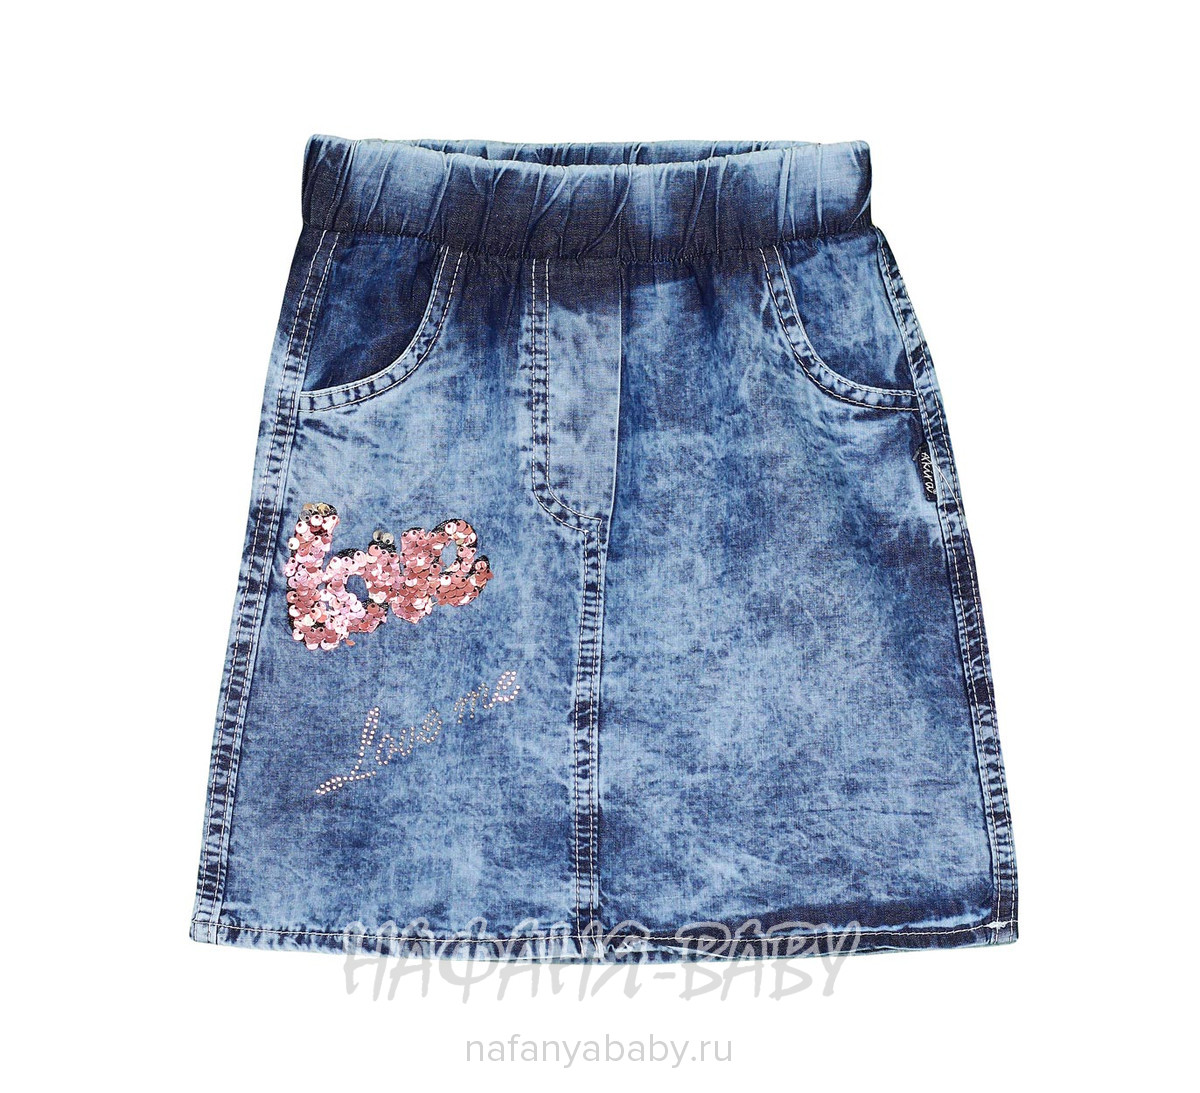 Детская джинсовая юбка AKIRA арт: 2631, 5-9 лет, 1-4 года, оптом Турция